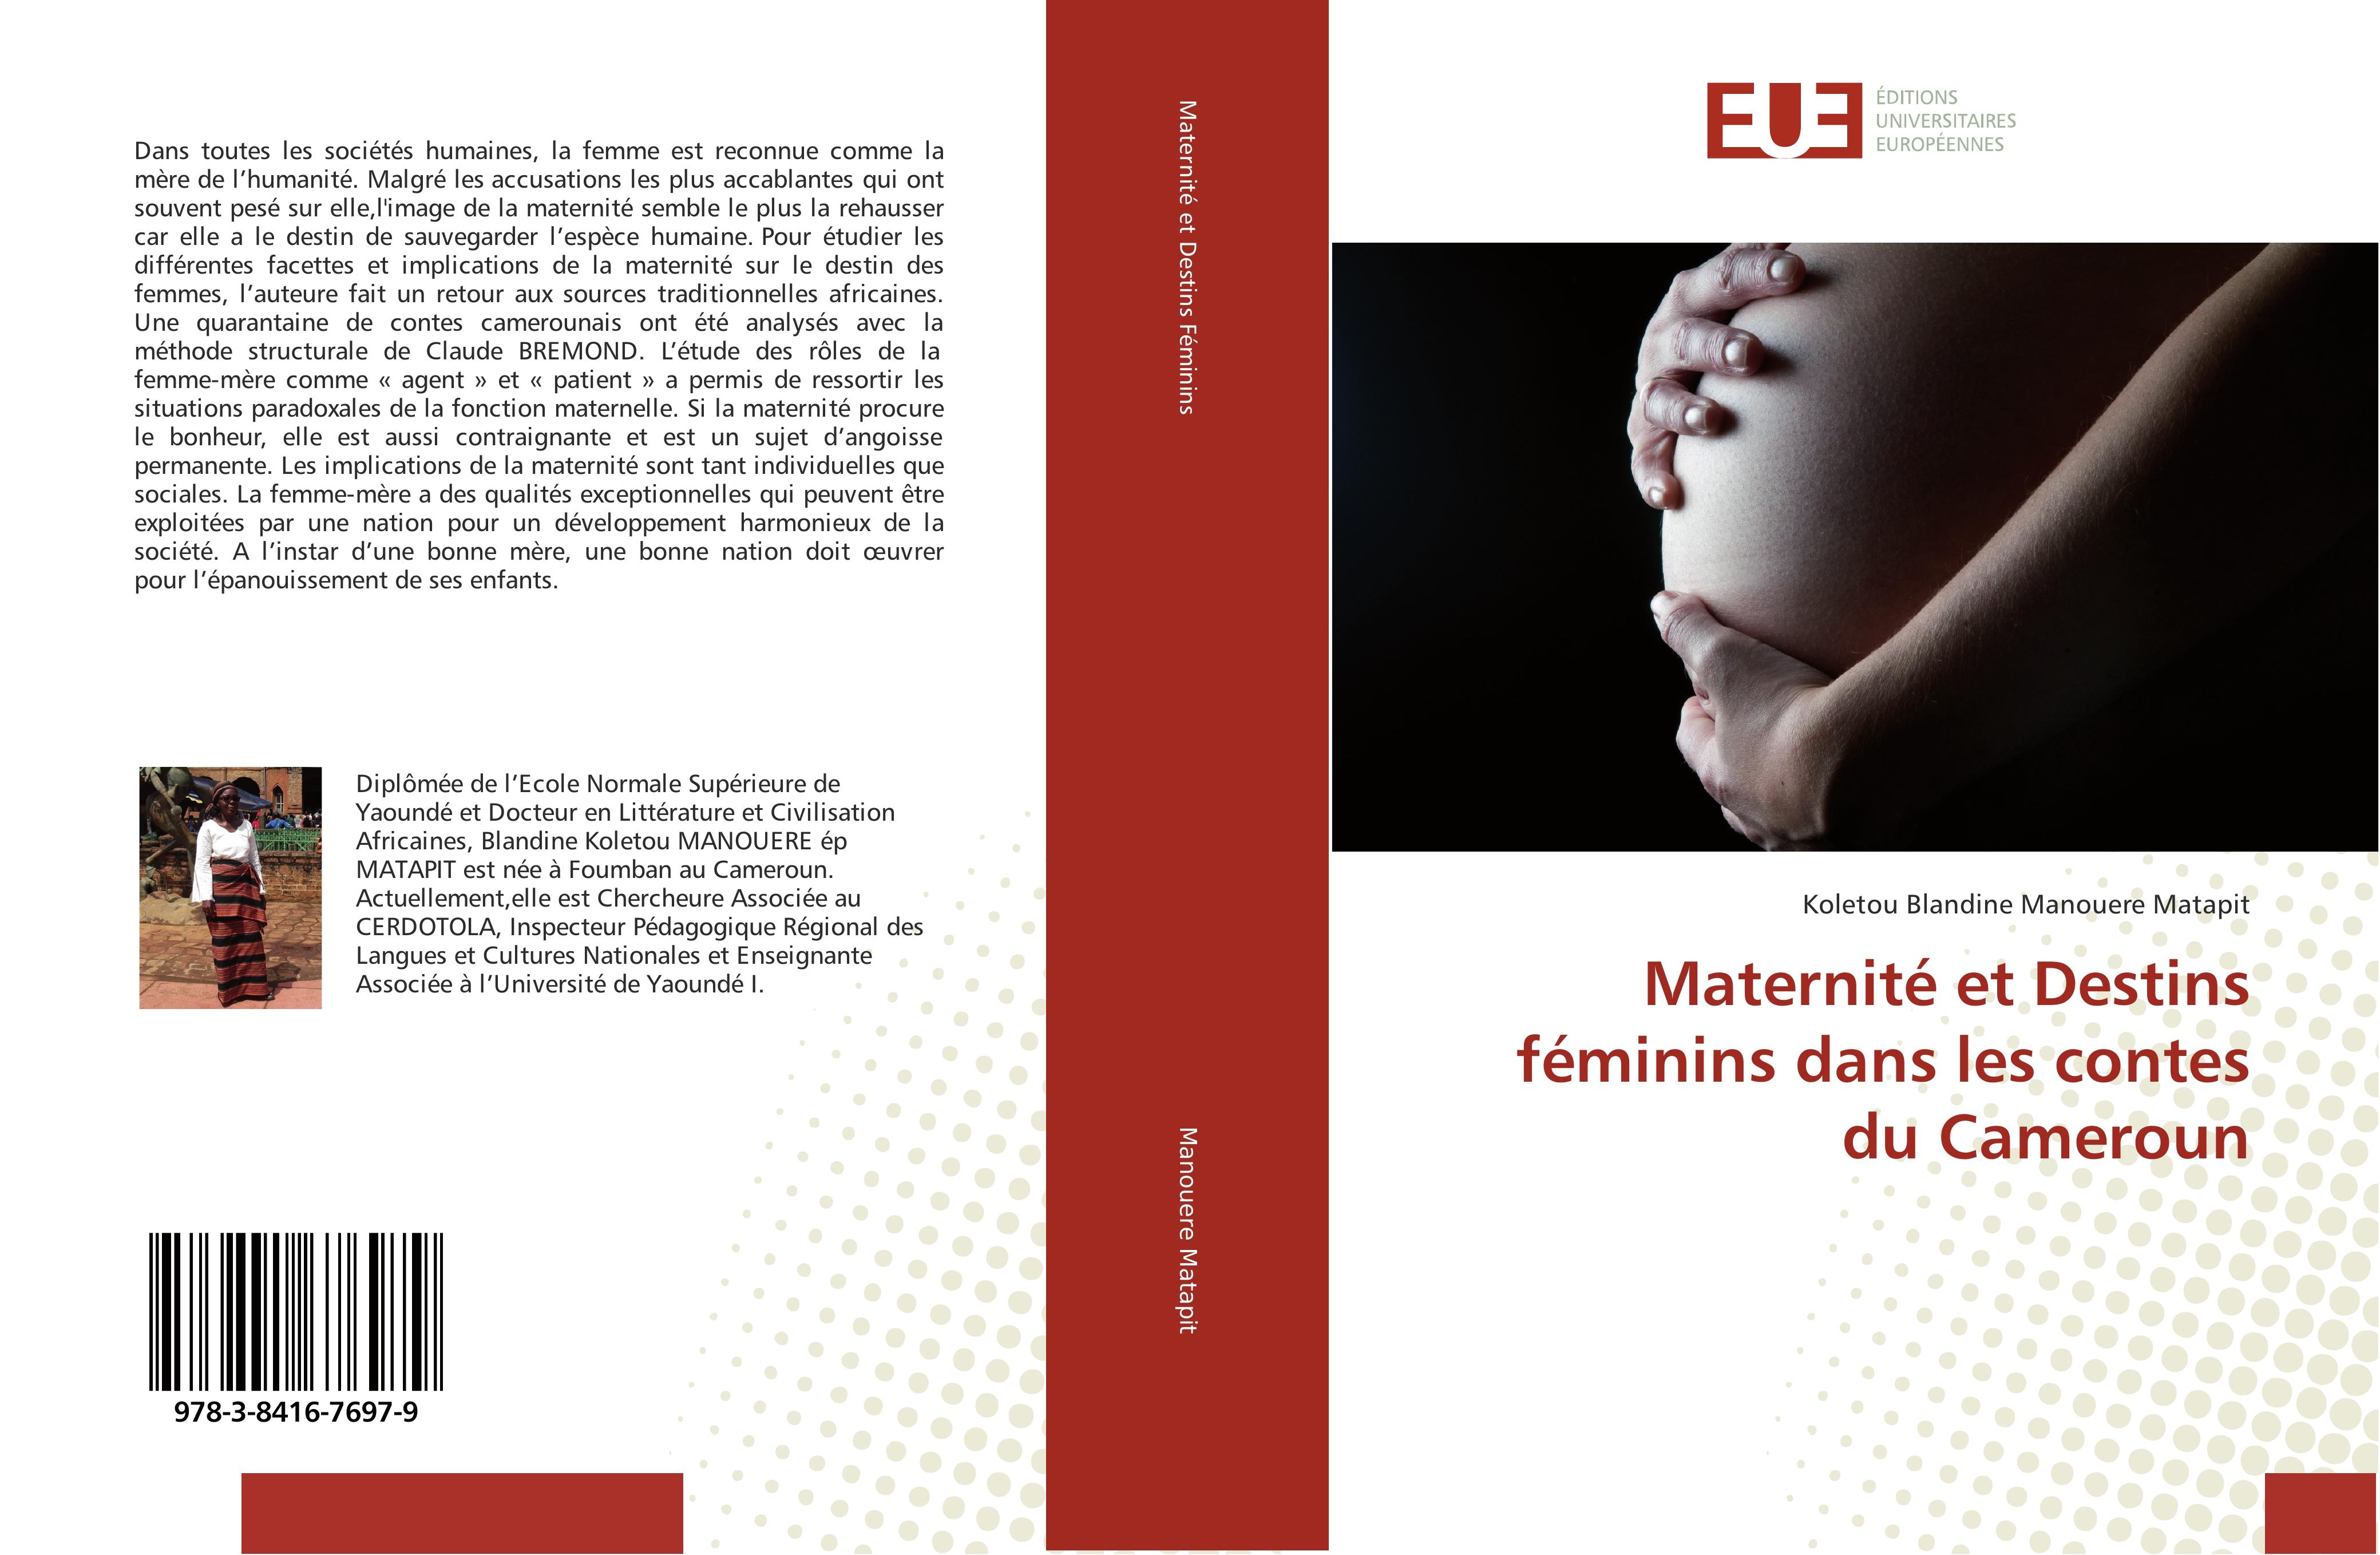 Maternité et Destins féminins dans les contes du Cameroun - Koletou Blandine Manouere Matapit